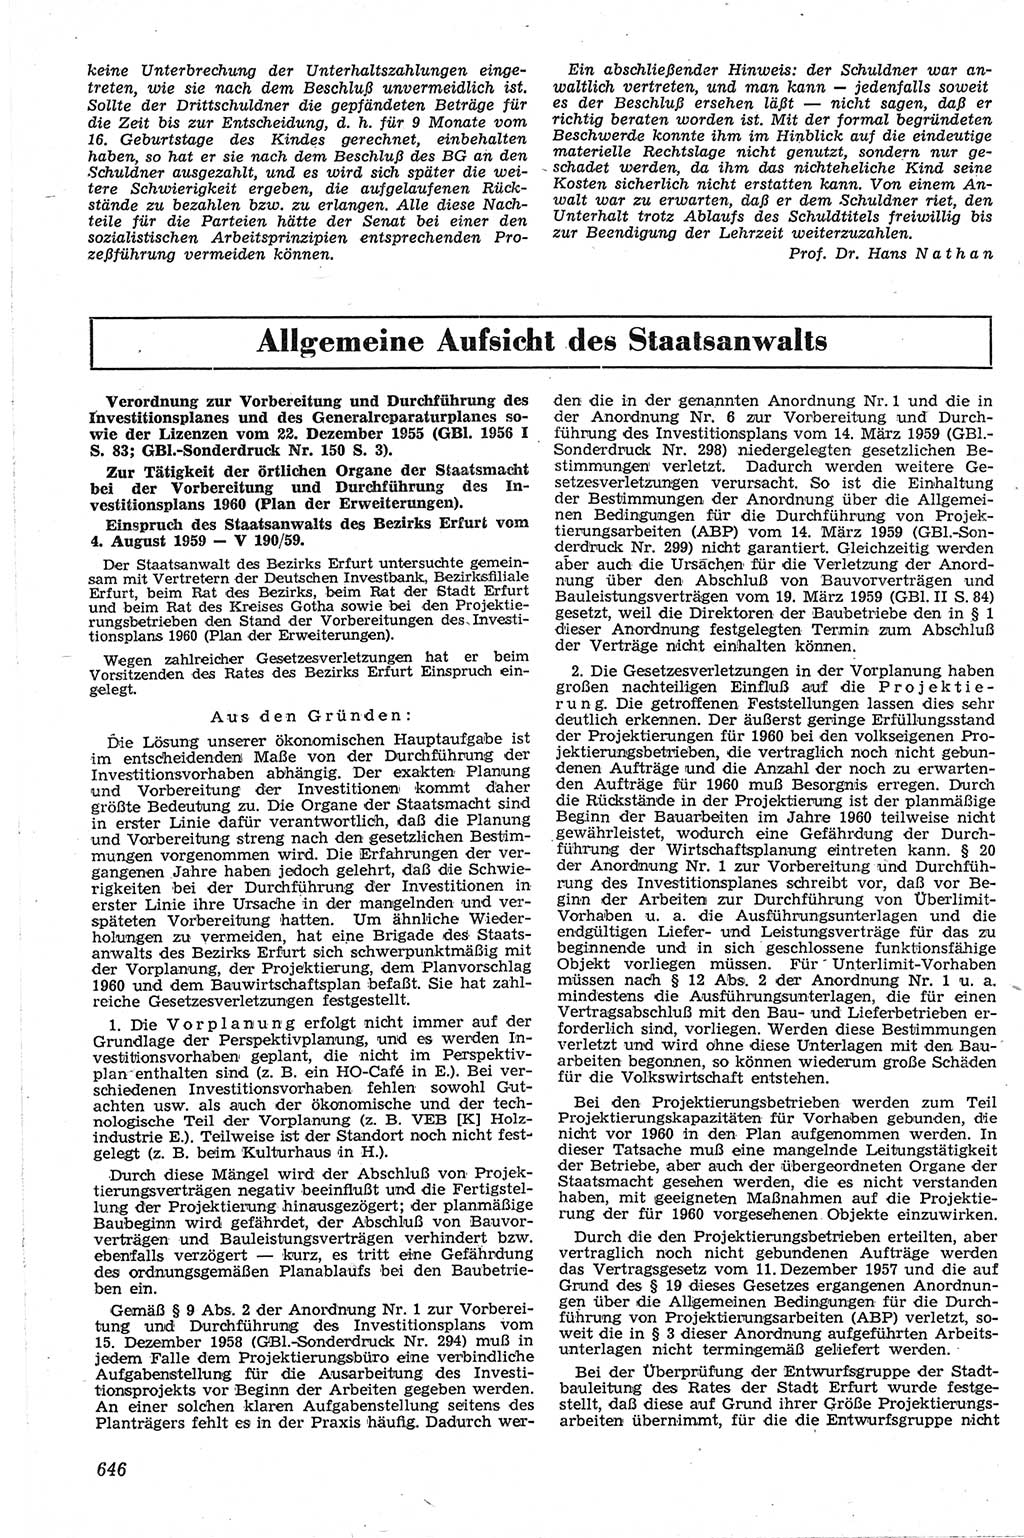 Neue Justiz (NJ), Zeitschrift für Recht und Rechtswissenschaft [Deutsche Demokratische Republik (DDR)], 13. Jahrgang 1959, Seite 646 (NJ DDR 1959, S. 646)